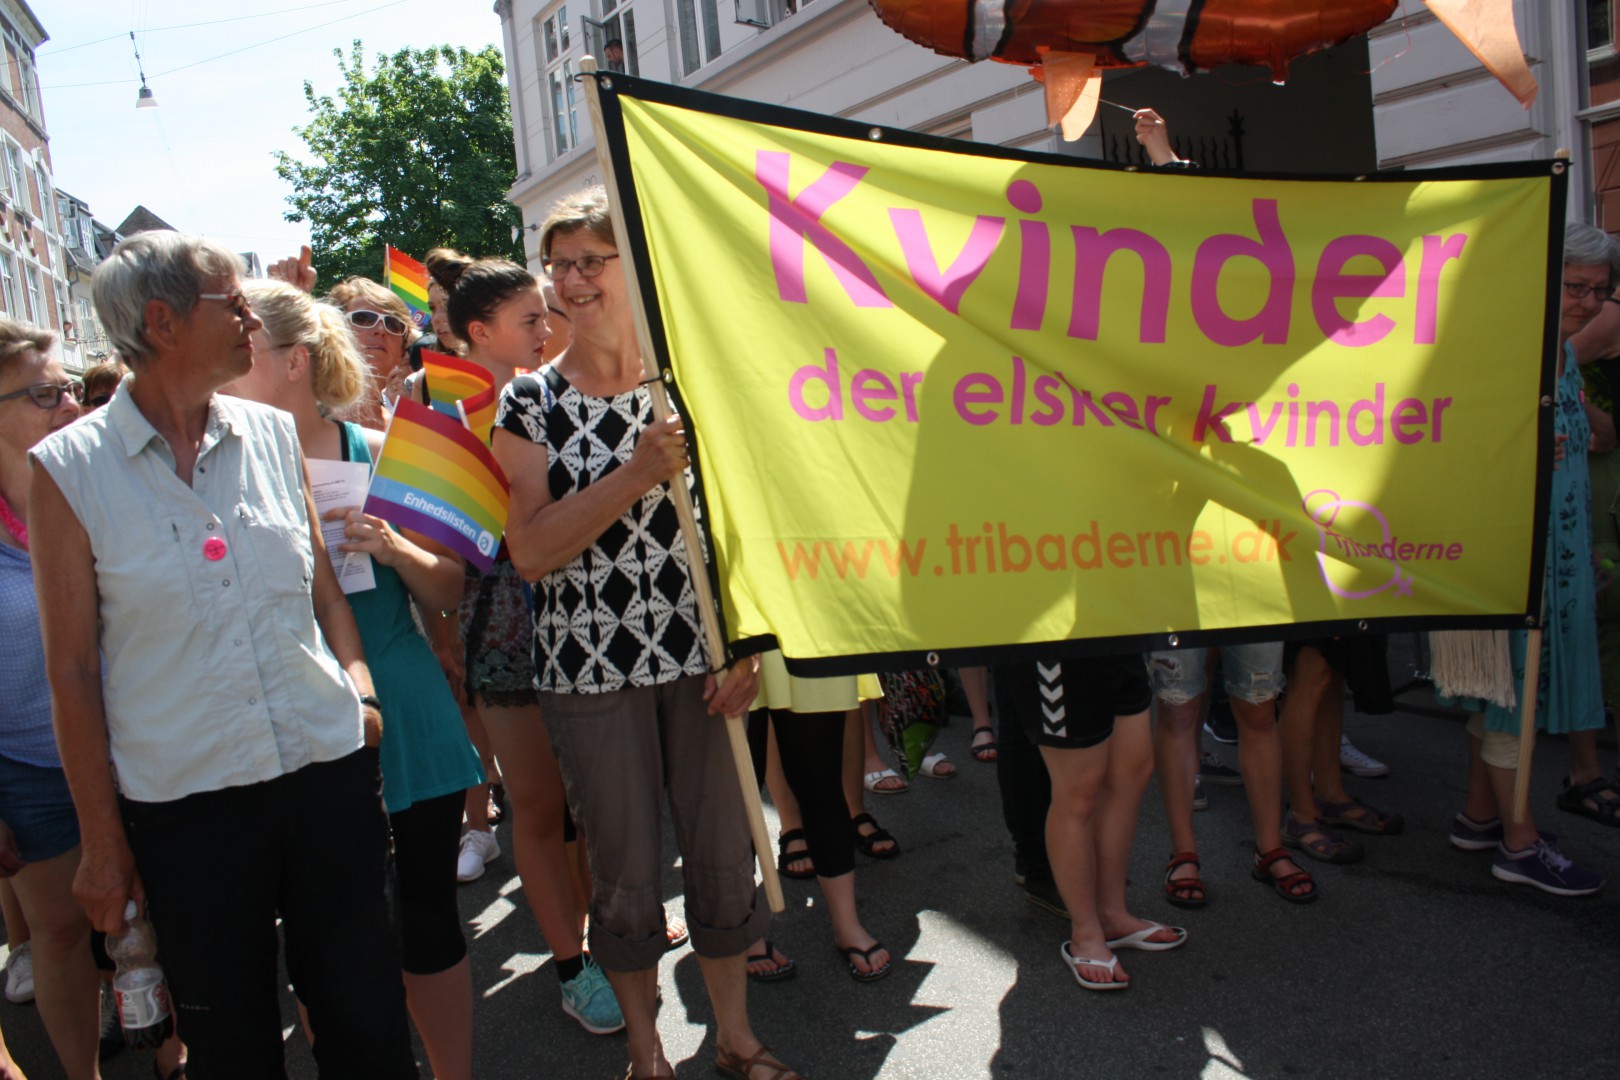 Tribaderne har repræsenteret homoseksuelle kvinder i  over 20 år // Foto: Emilie Schlie